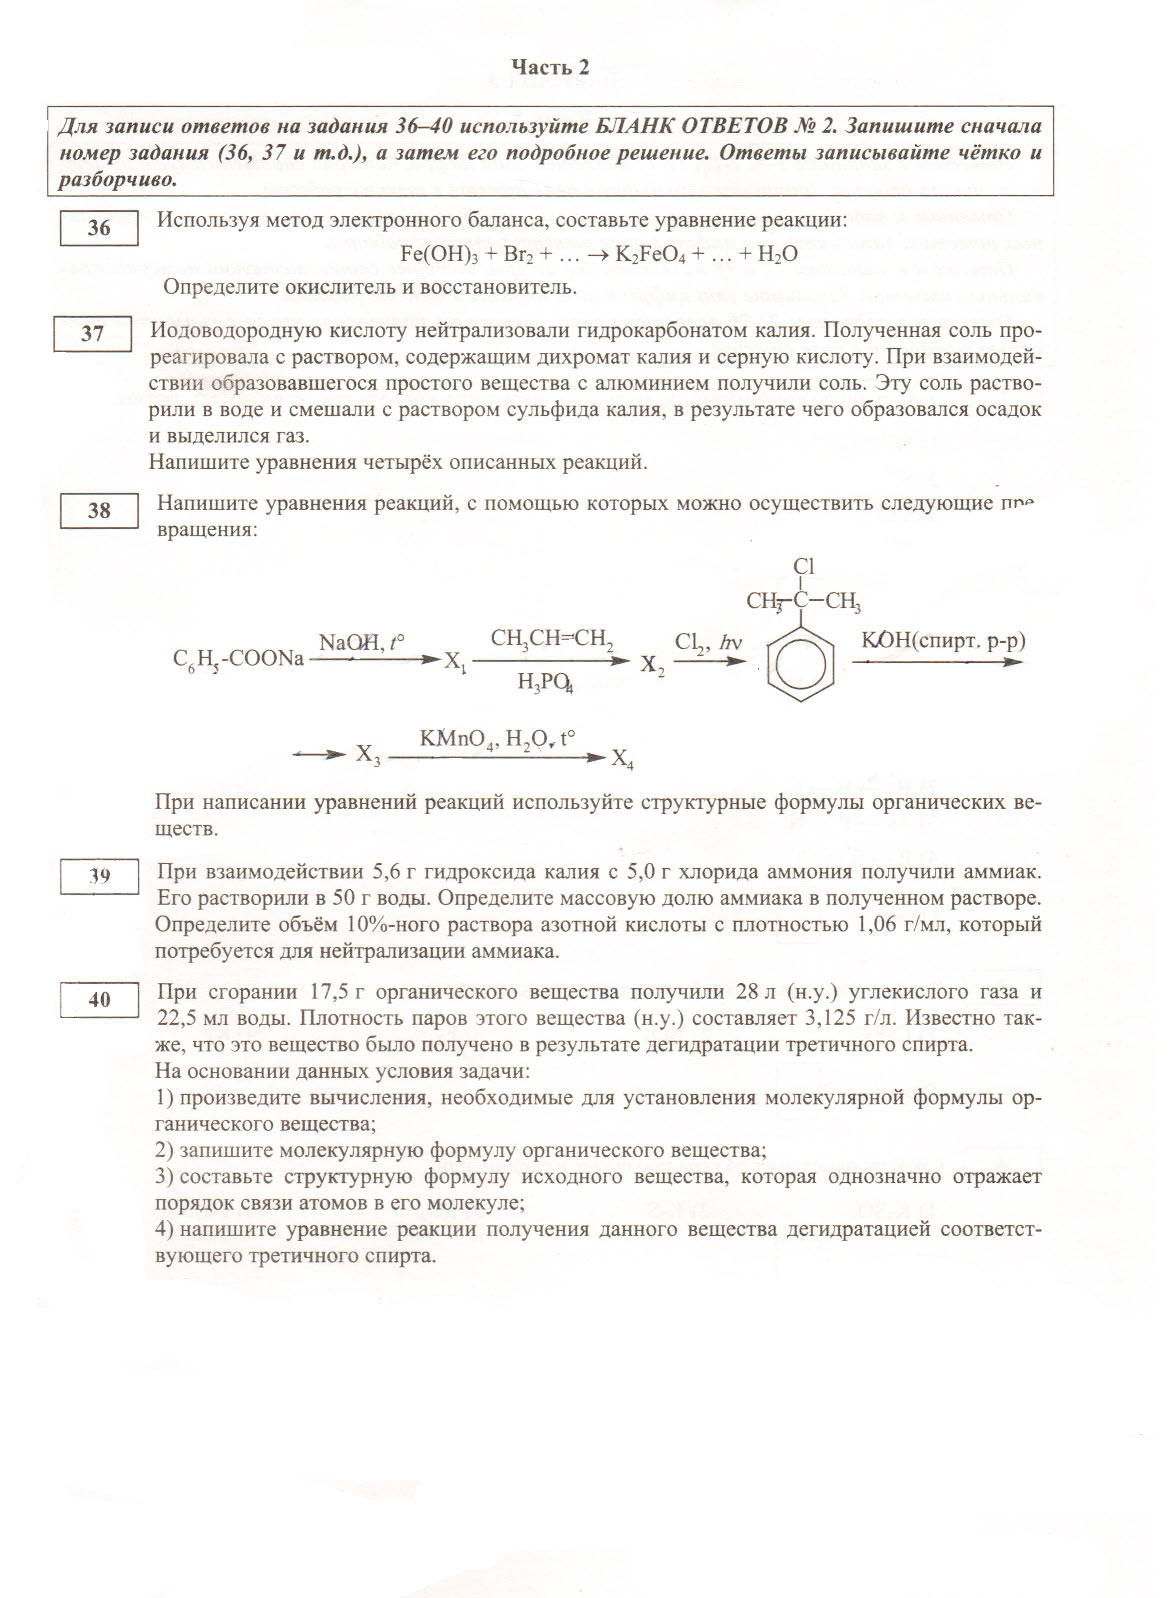 Примеры заданий ЕГЭ по химии 2015